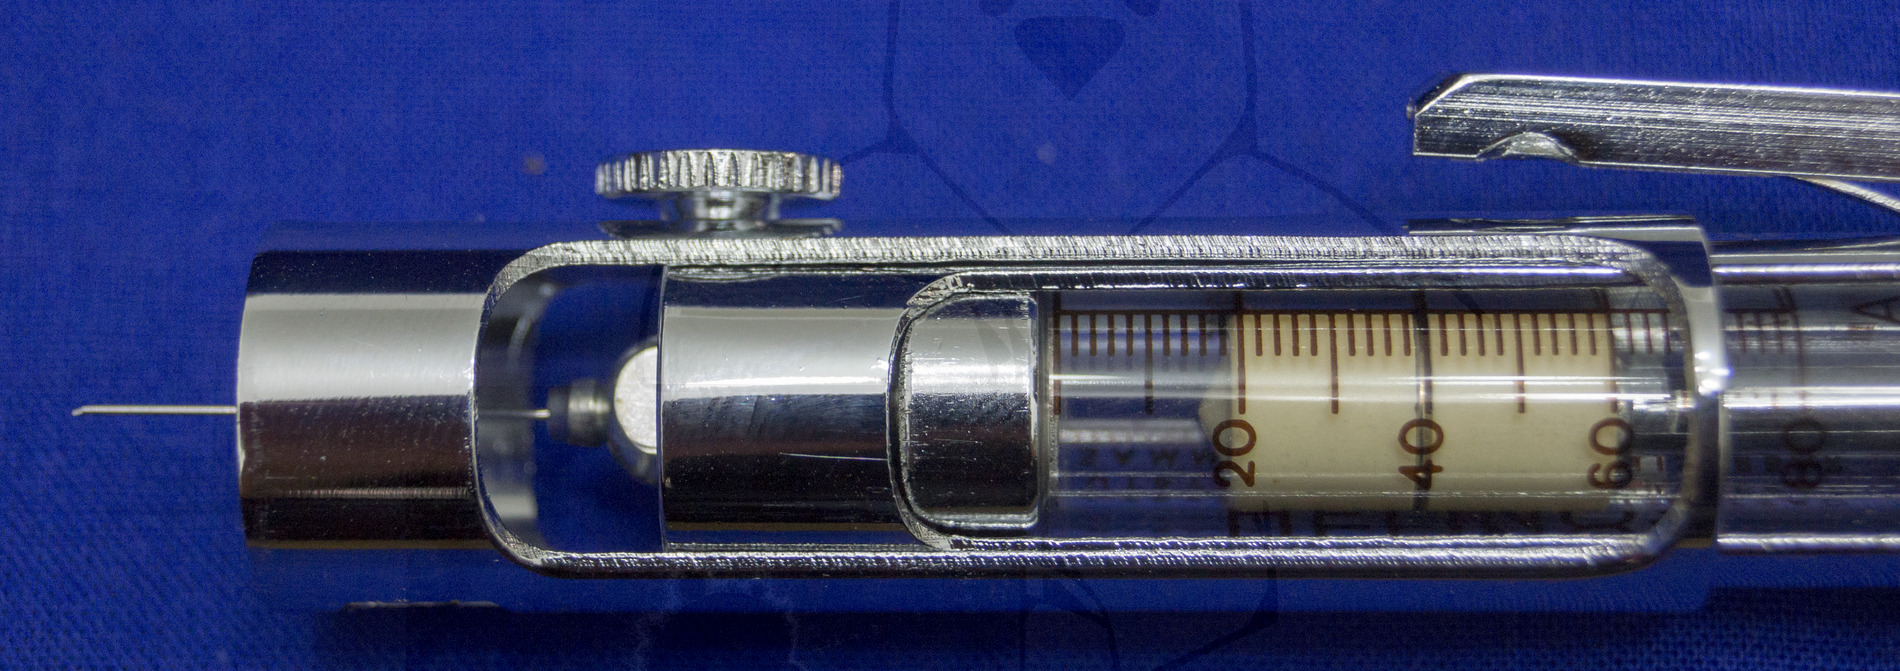 Insulininjektor "Helinos", Mitte der 1950'er Jahre, Detailaufnahme des unteren Teils des Injektors